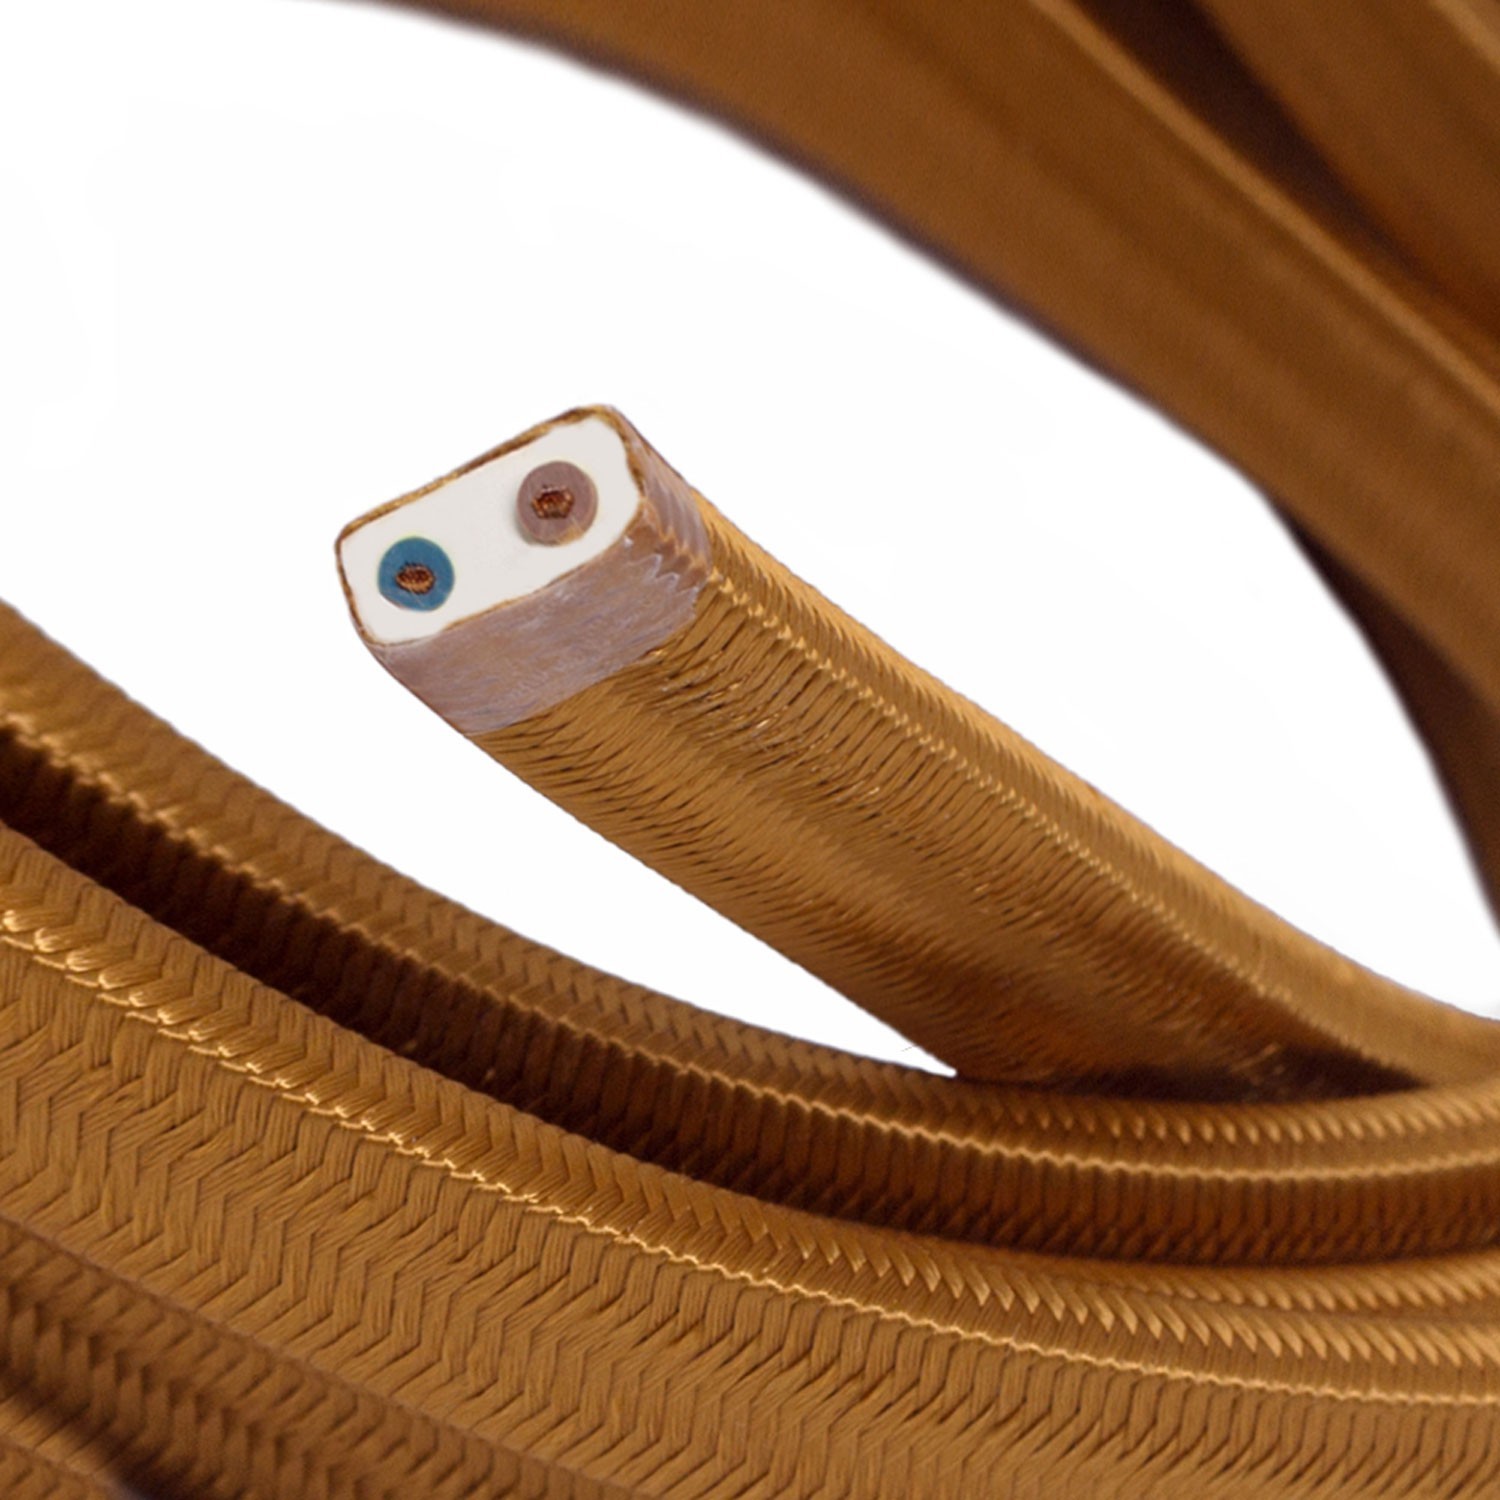 Tekstilni električni kabel za Svjetlosni lanac prekriven CM22 Whiskey tekstilom